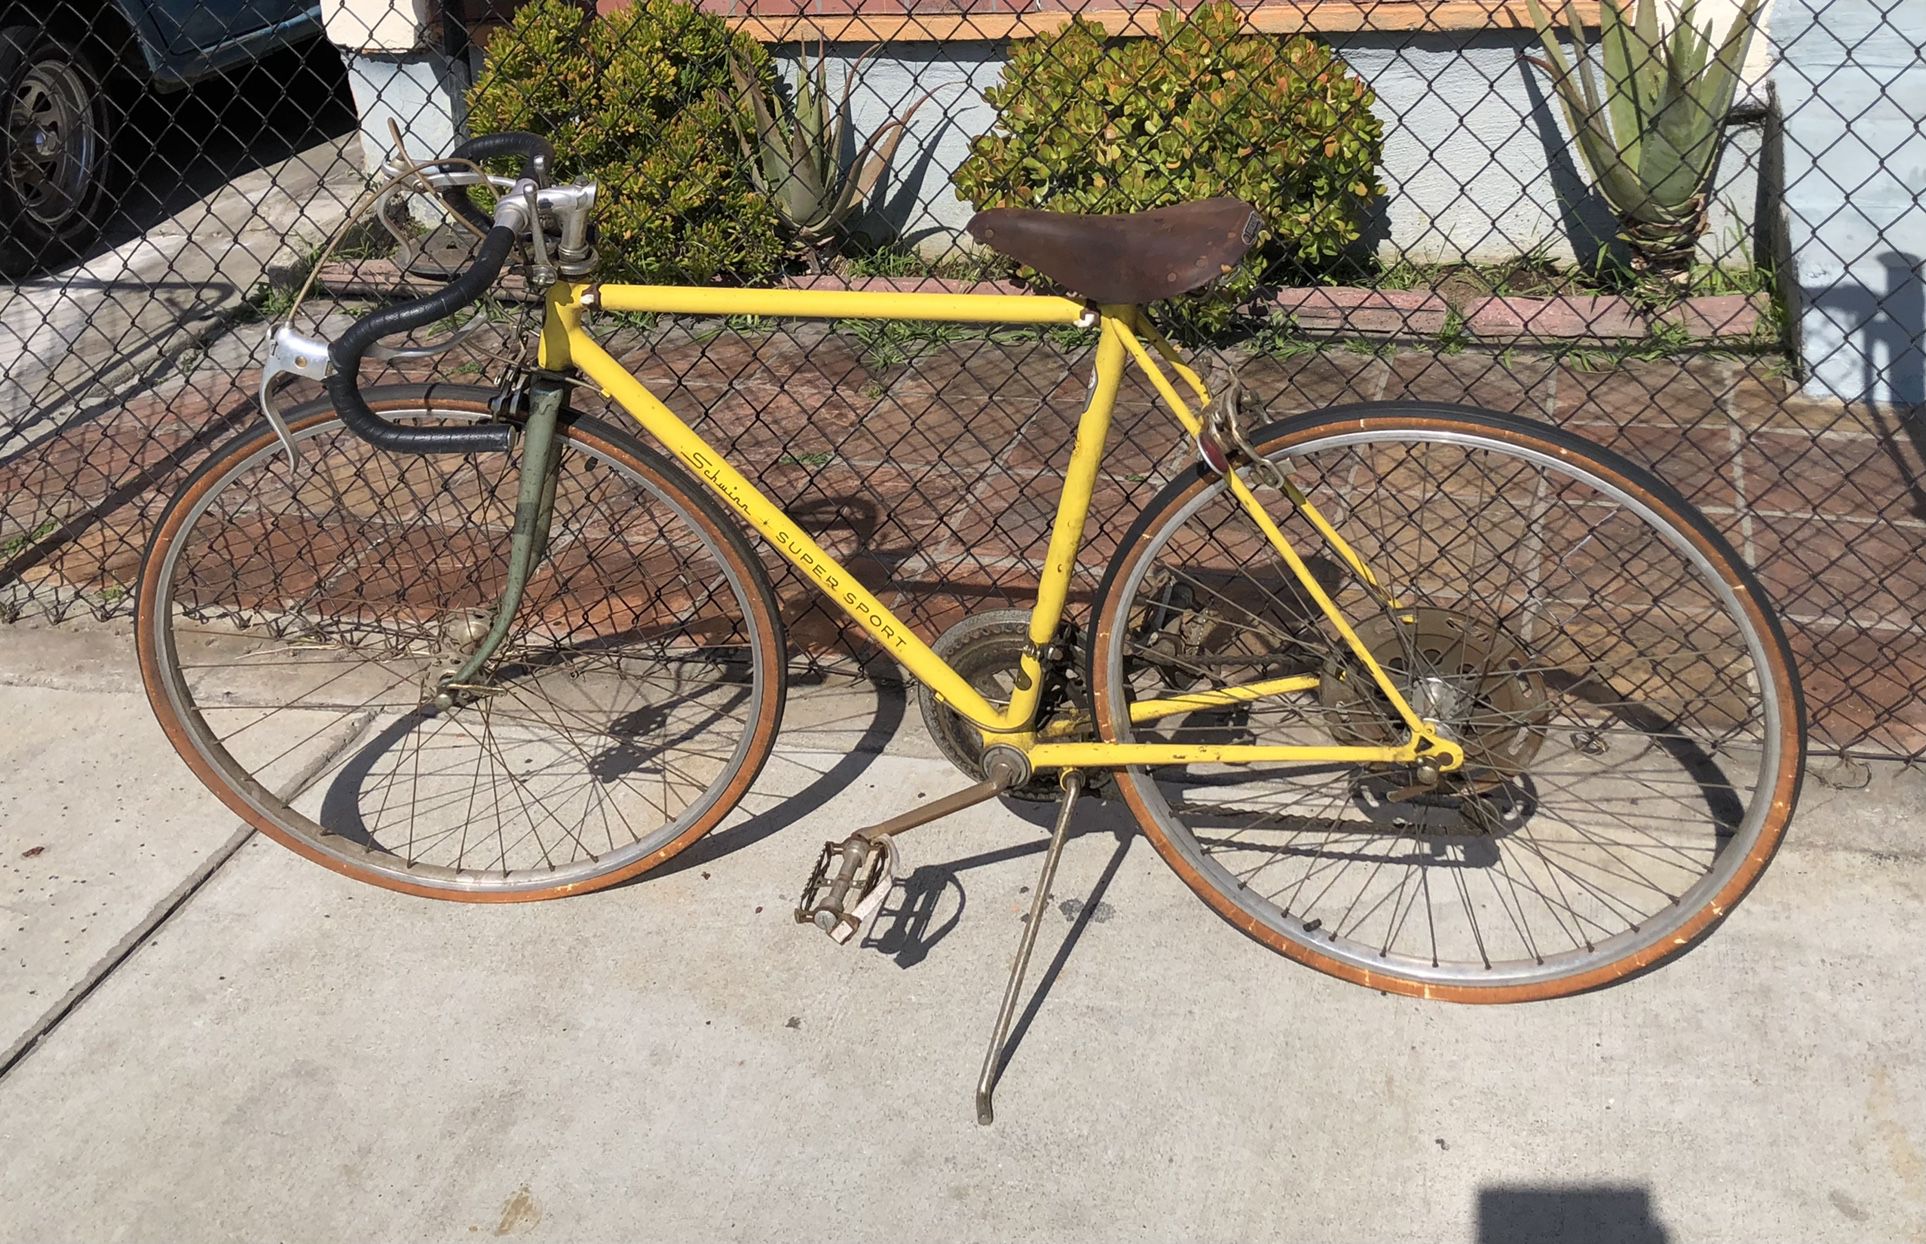 Vintage Schwinn Supersport Chicago Yellow Bicycle 10 Speed Bike 1970s